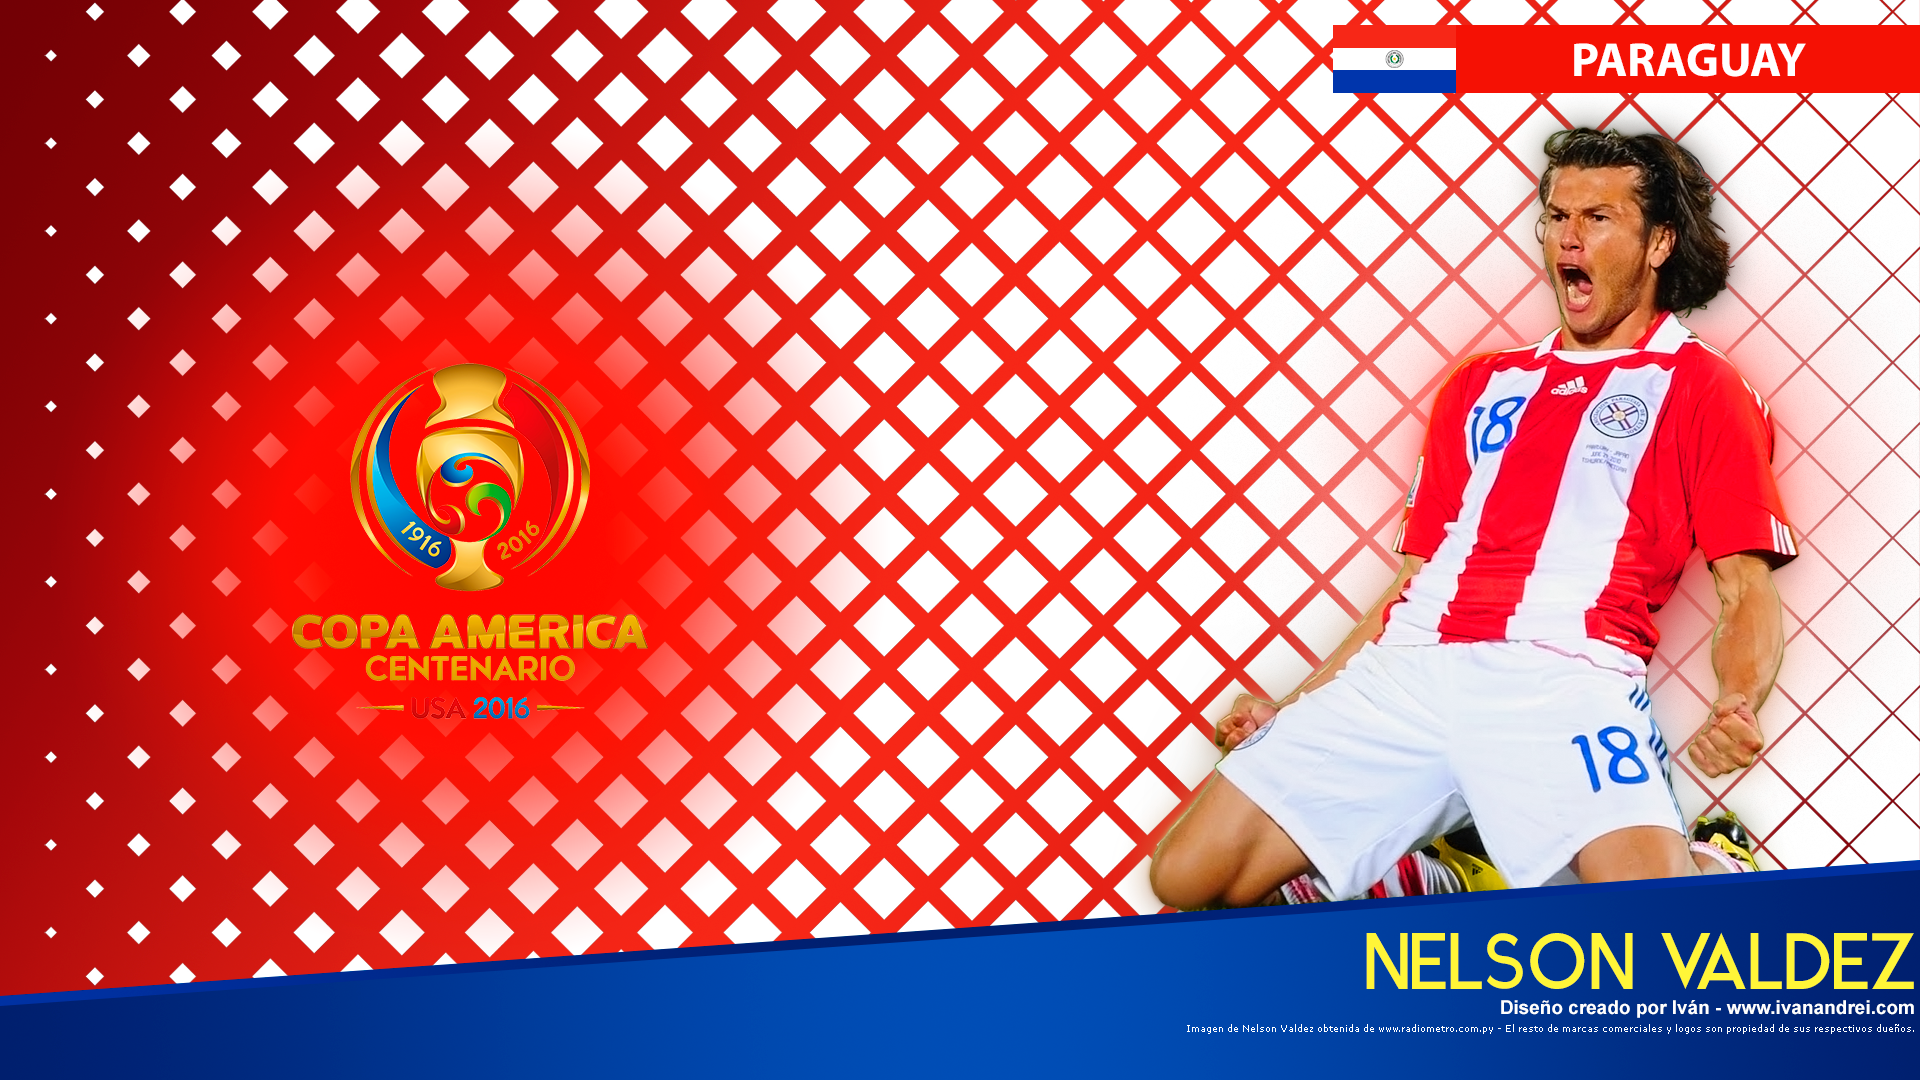 Copa América Centenario USA 2016 - Paraguay (Nelson Valdez - 1920x1080)